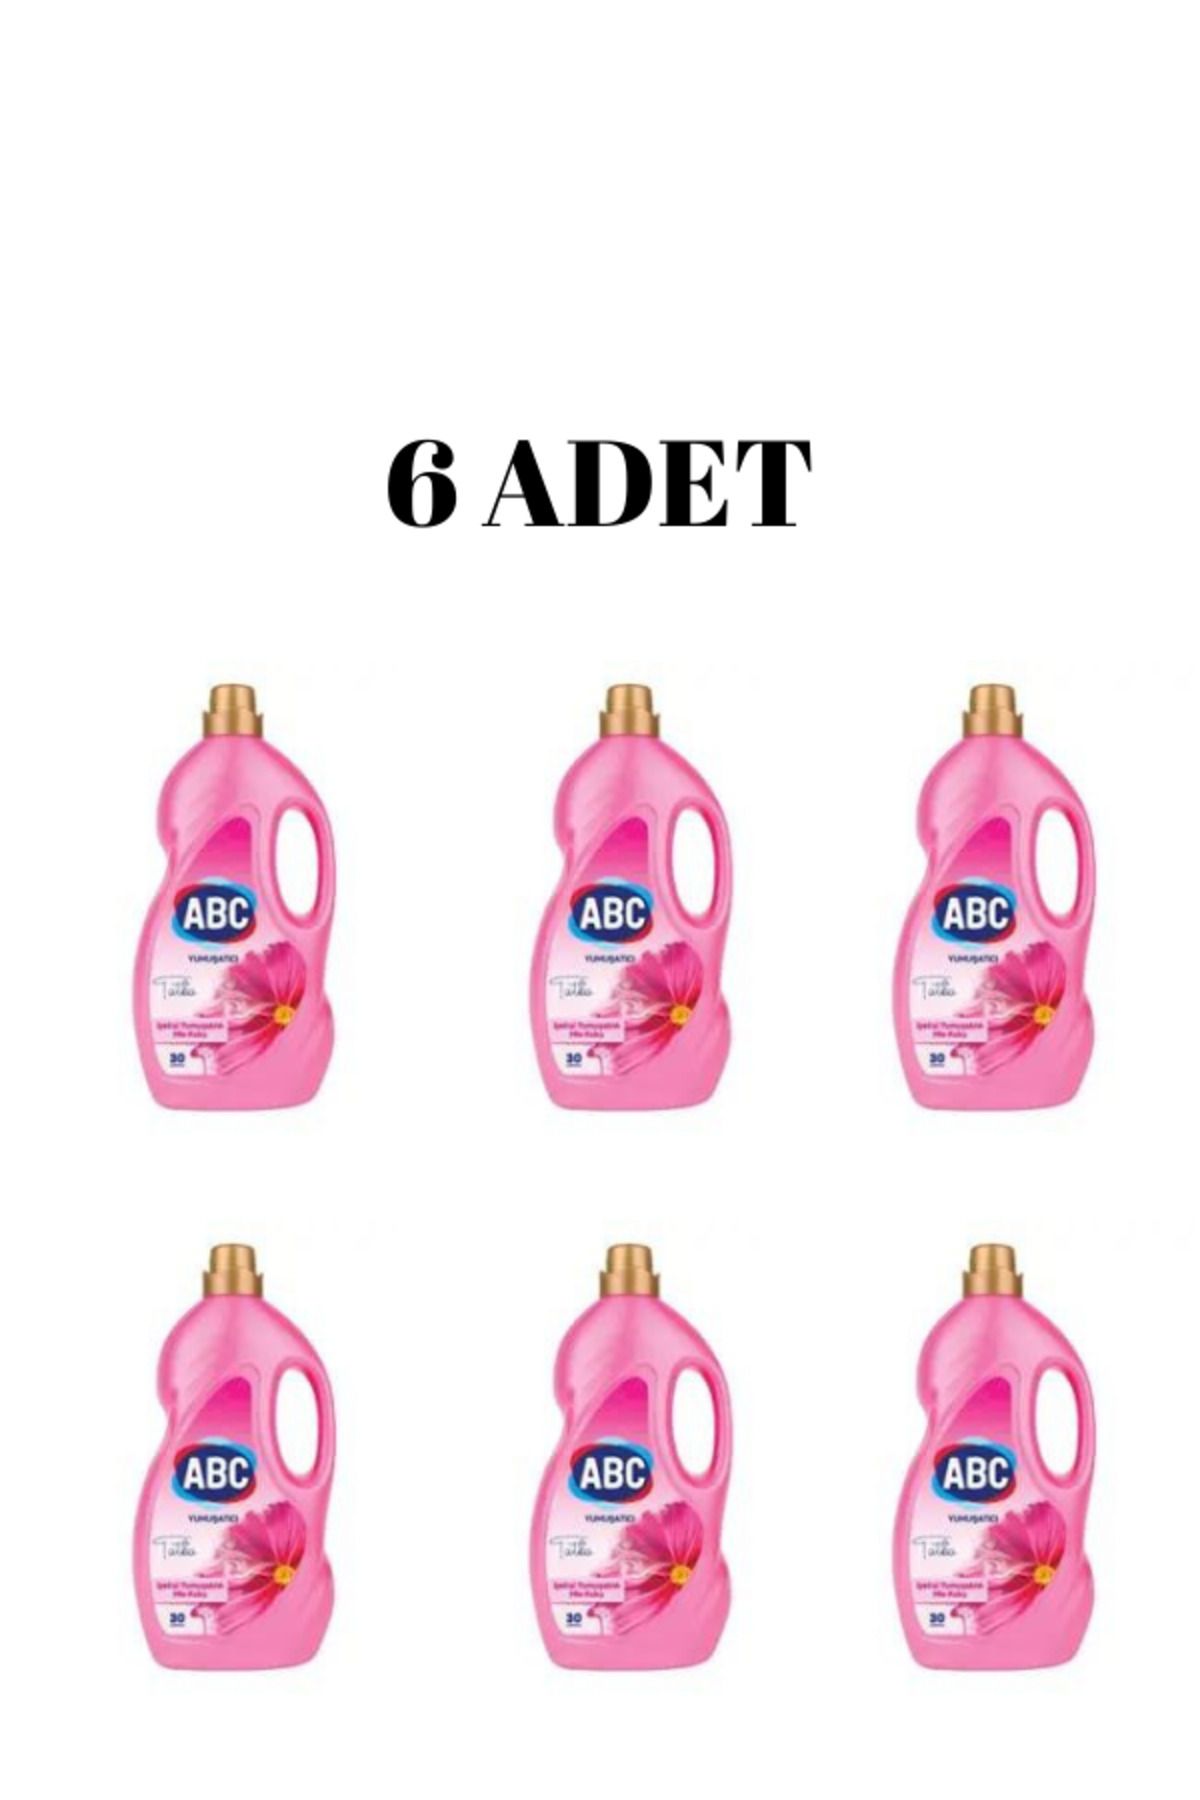 ABC Sıvı Çamaşır Yumuşatıcı Tutku 3 Litre ( 6 ADET )